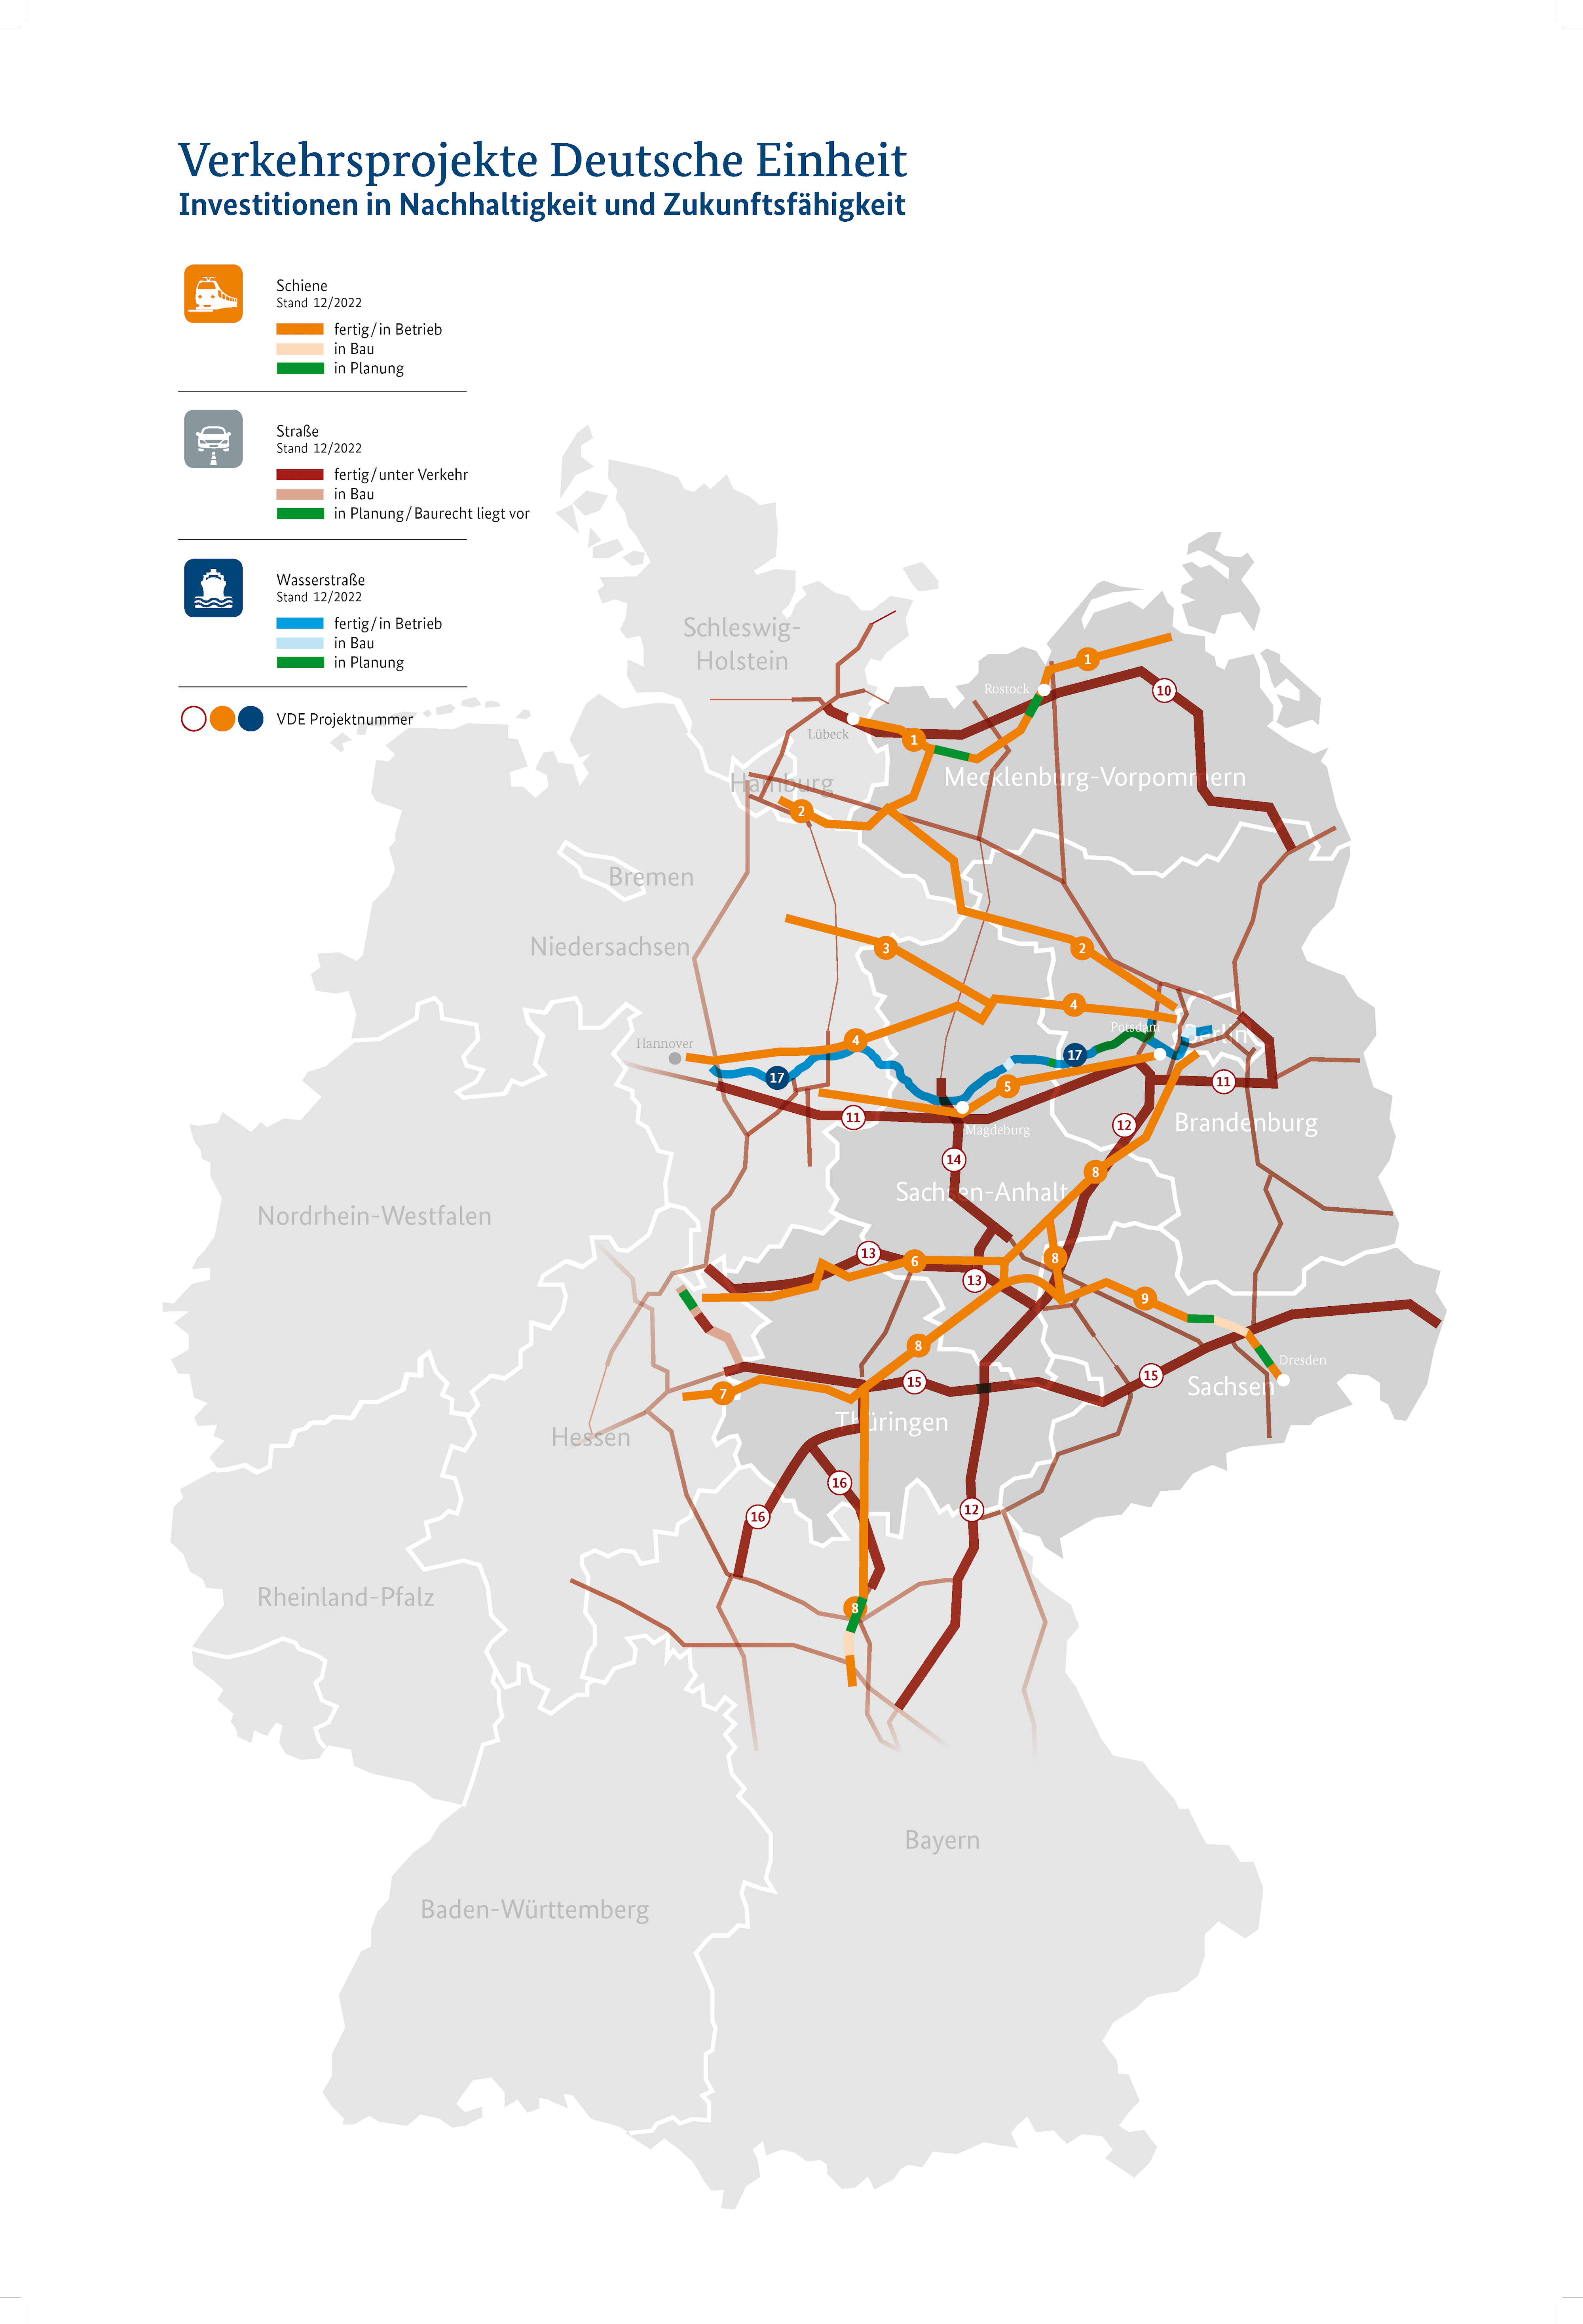 Deutschland-Karte: Verkehrsprojekte Deutsche Einheit (VDE)